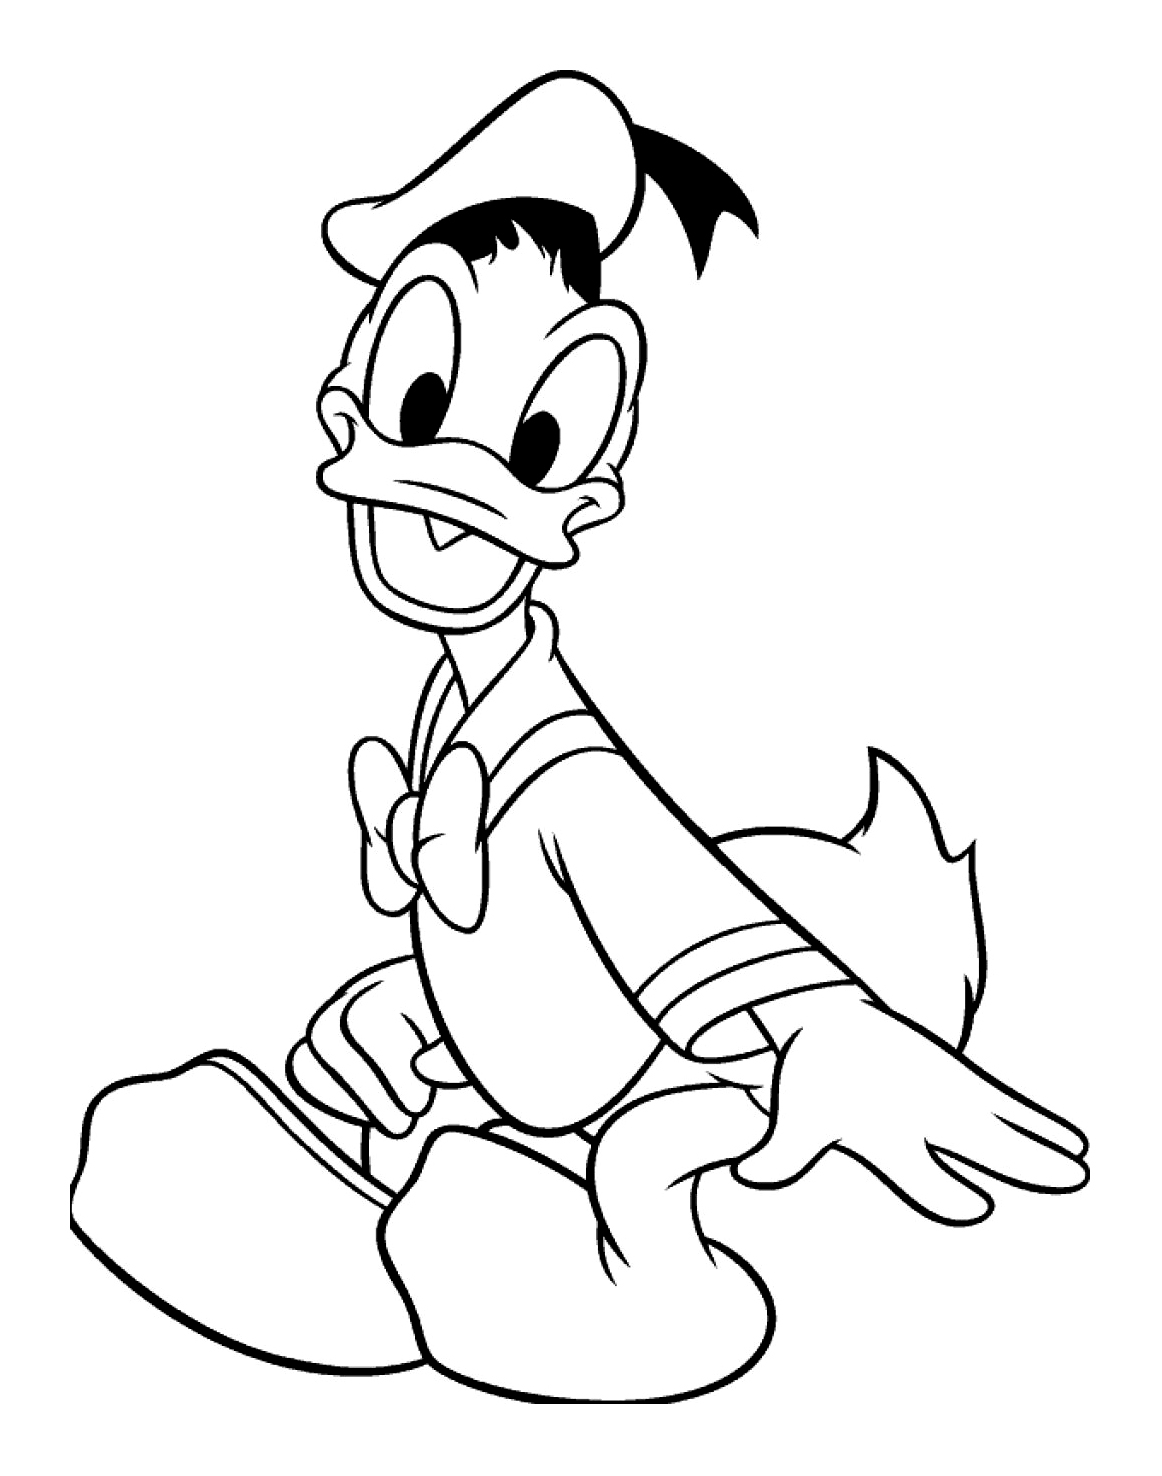 El sonriente Donald, uno de los personajes más antiguos de Disney